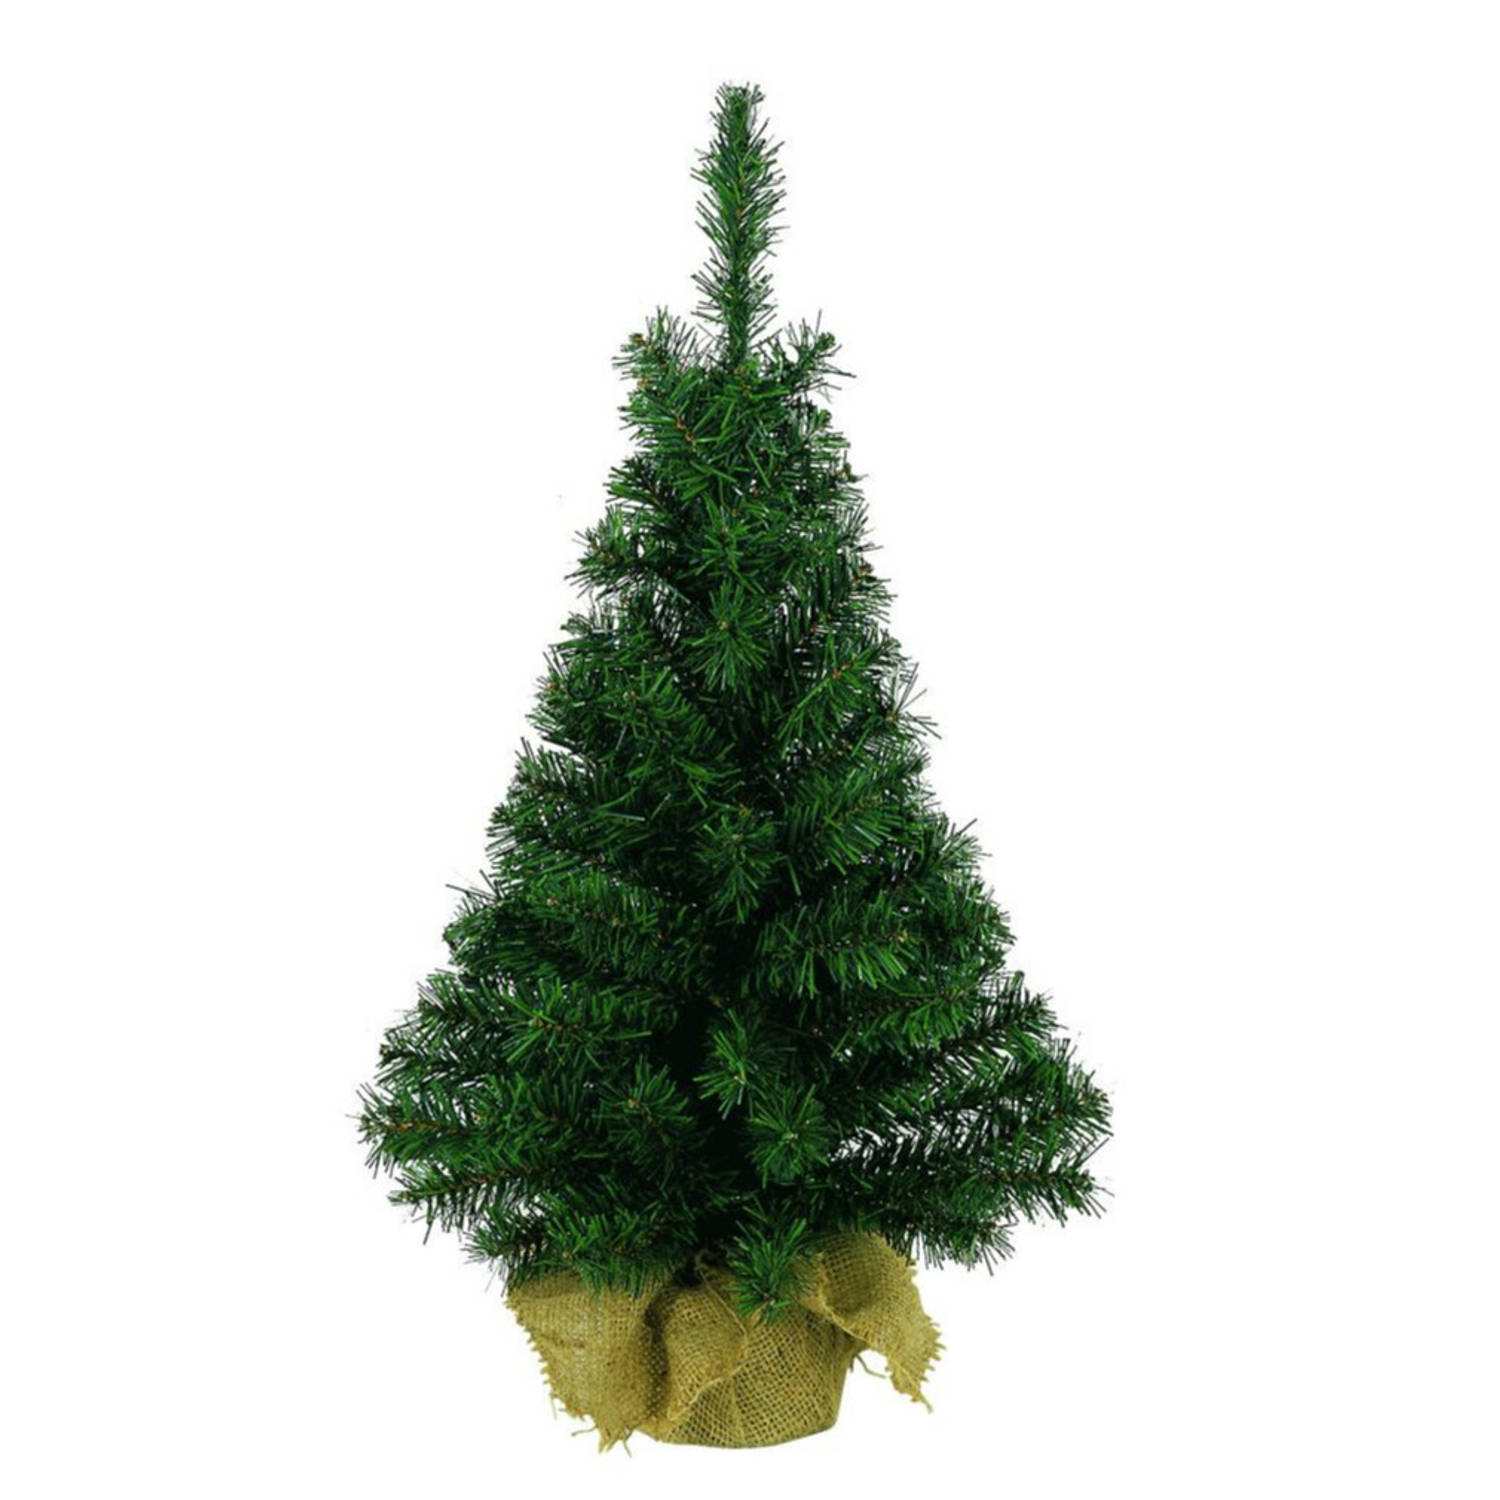 Kerst kunstkerstboom groen 90 cm versiering/decoratie - Kunstkerstboom